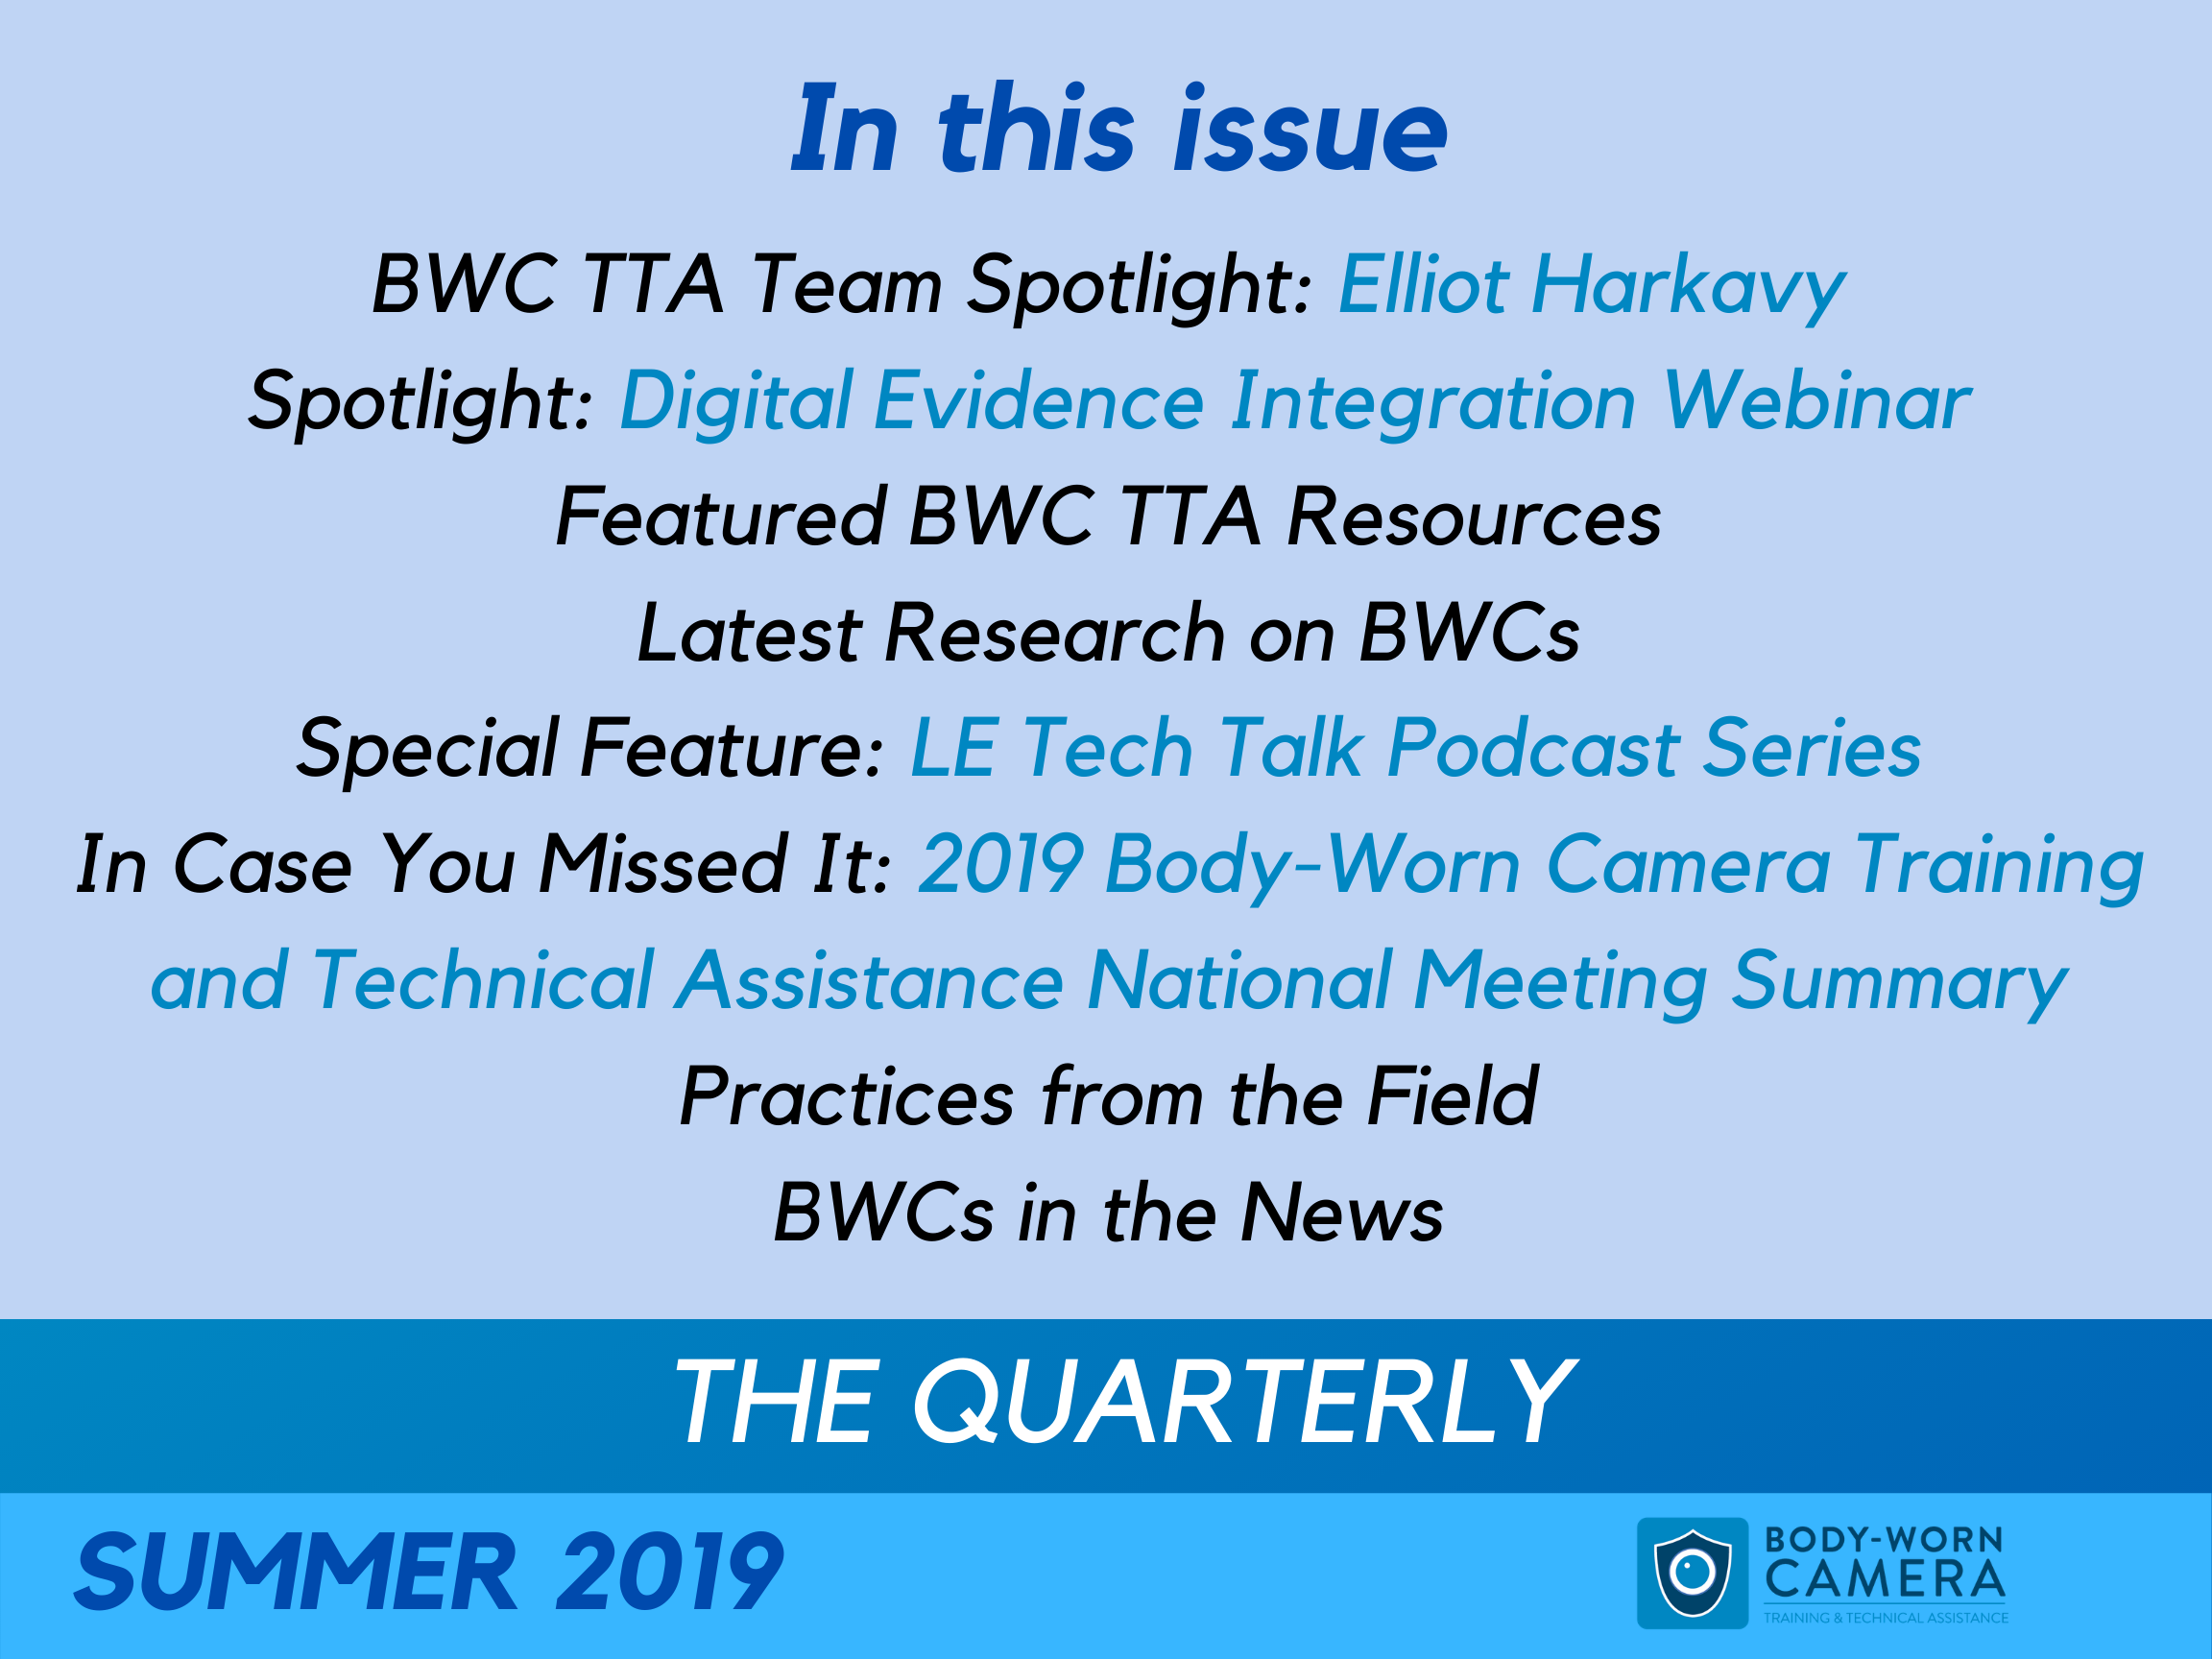 Summer 2019 Quarterly Newsletter